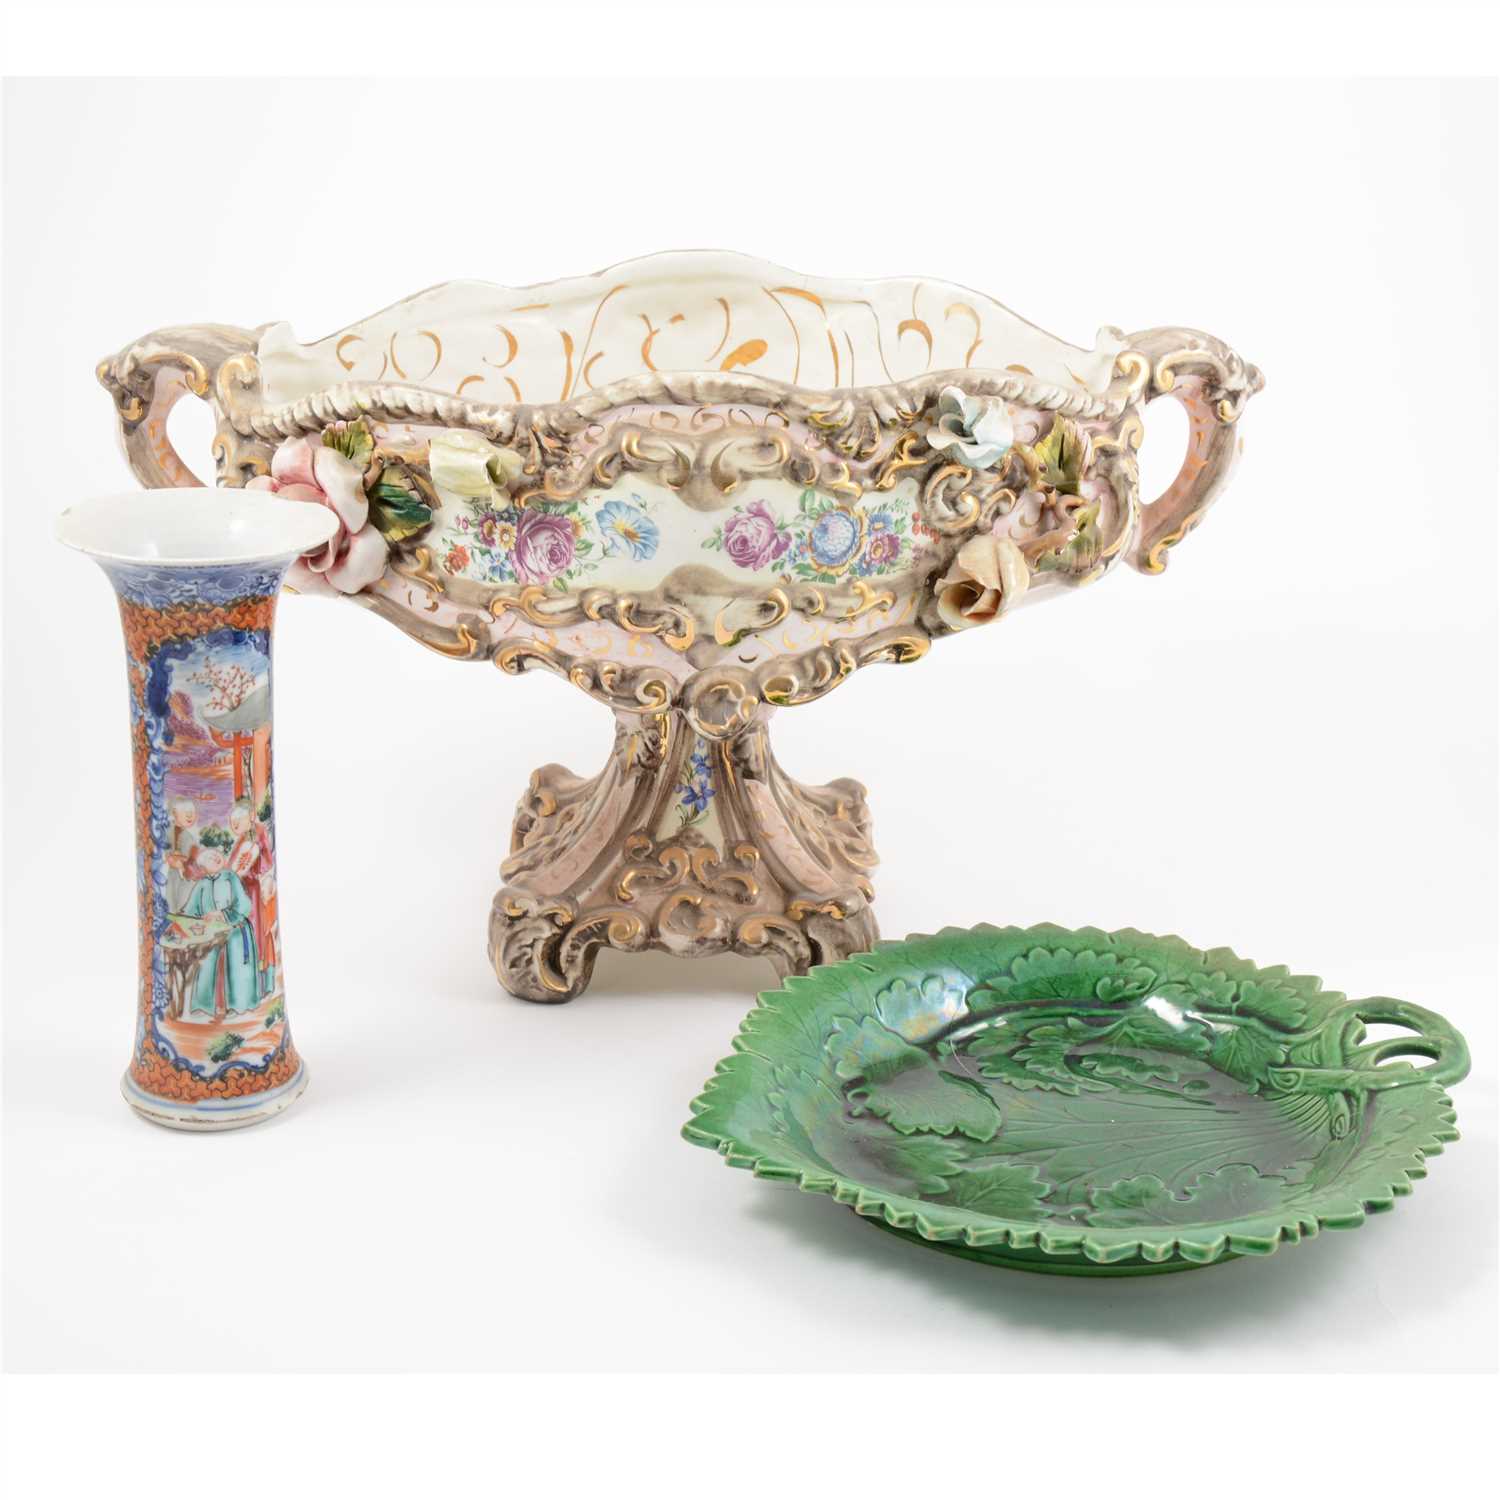 Lot 13 - Assorted decorative ceramics